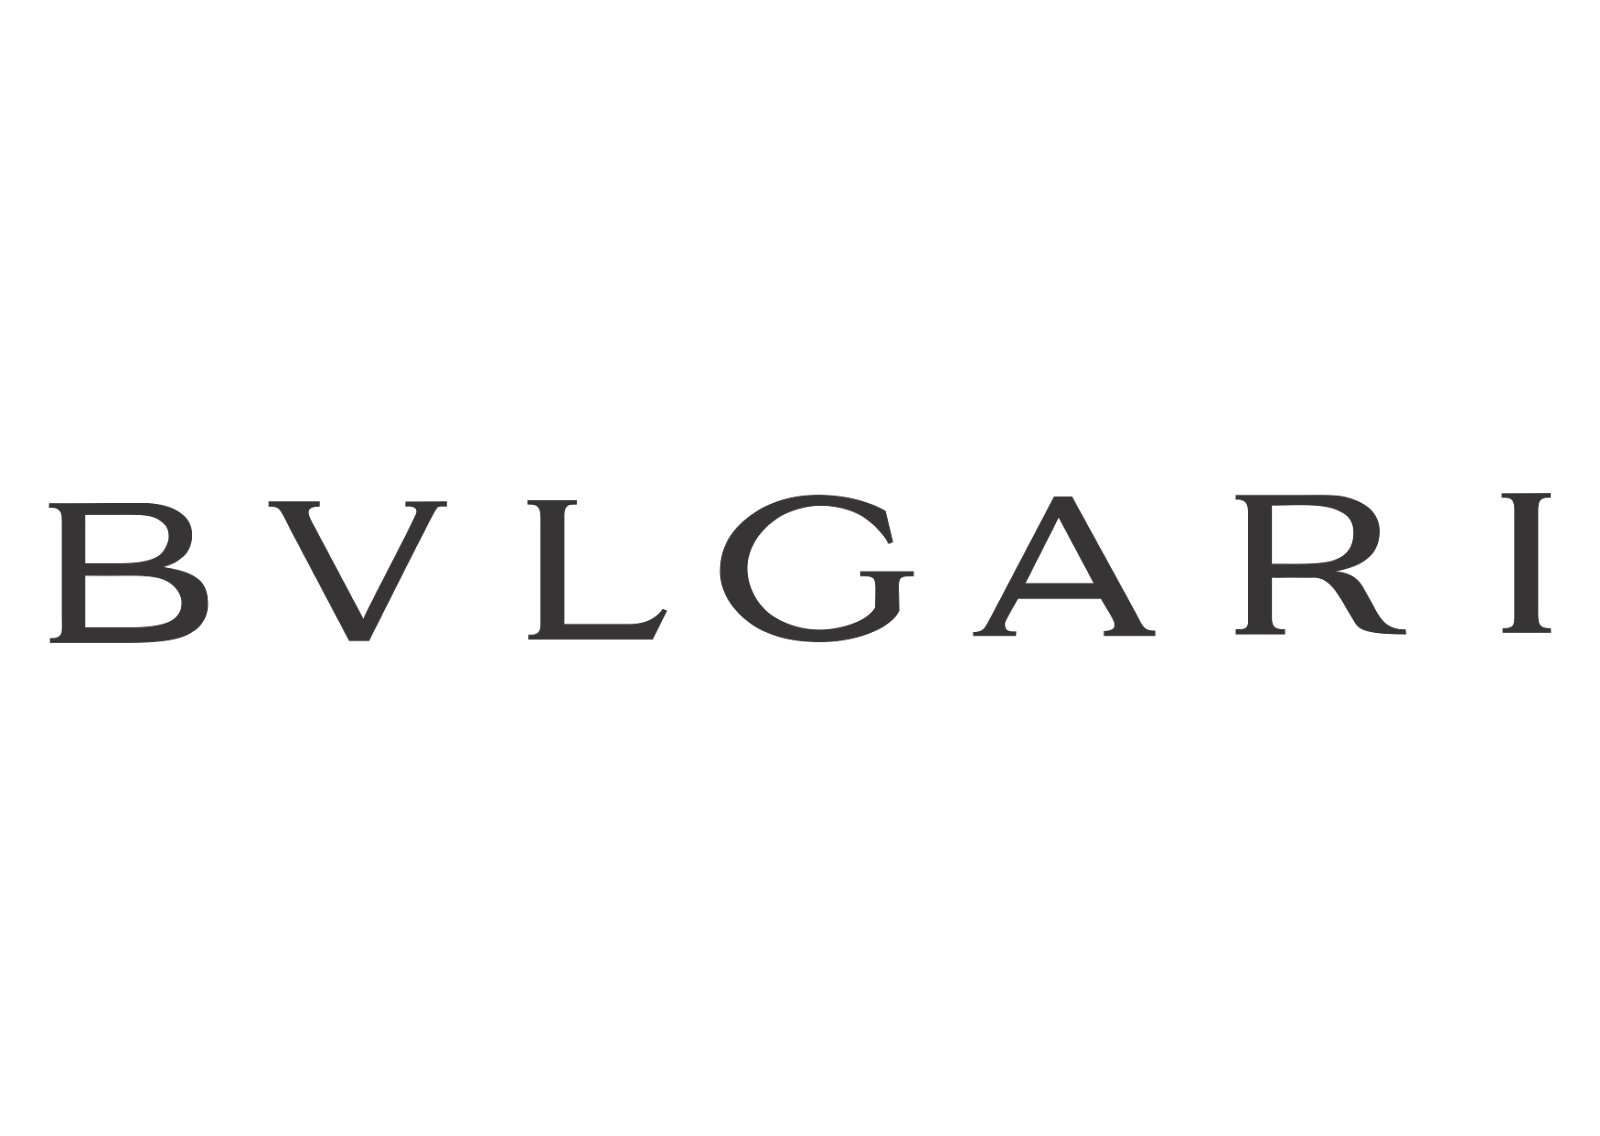 Bvlgari Logos